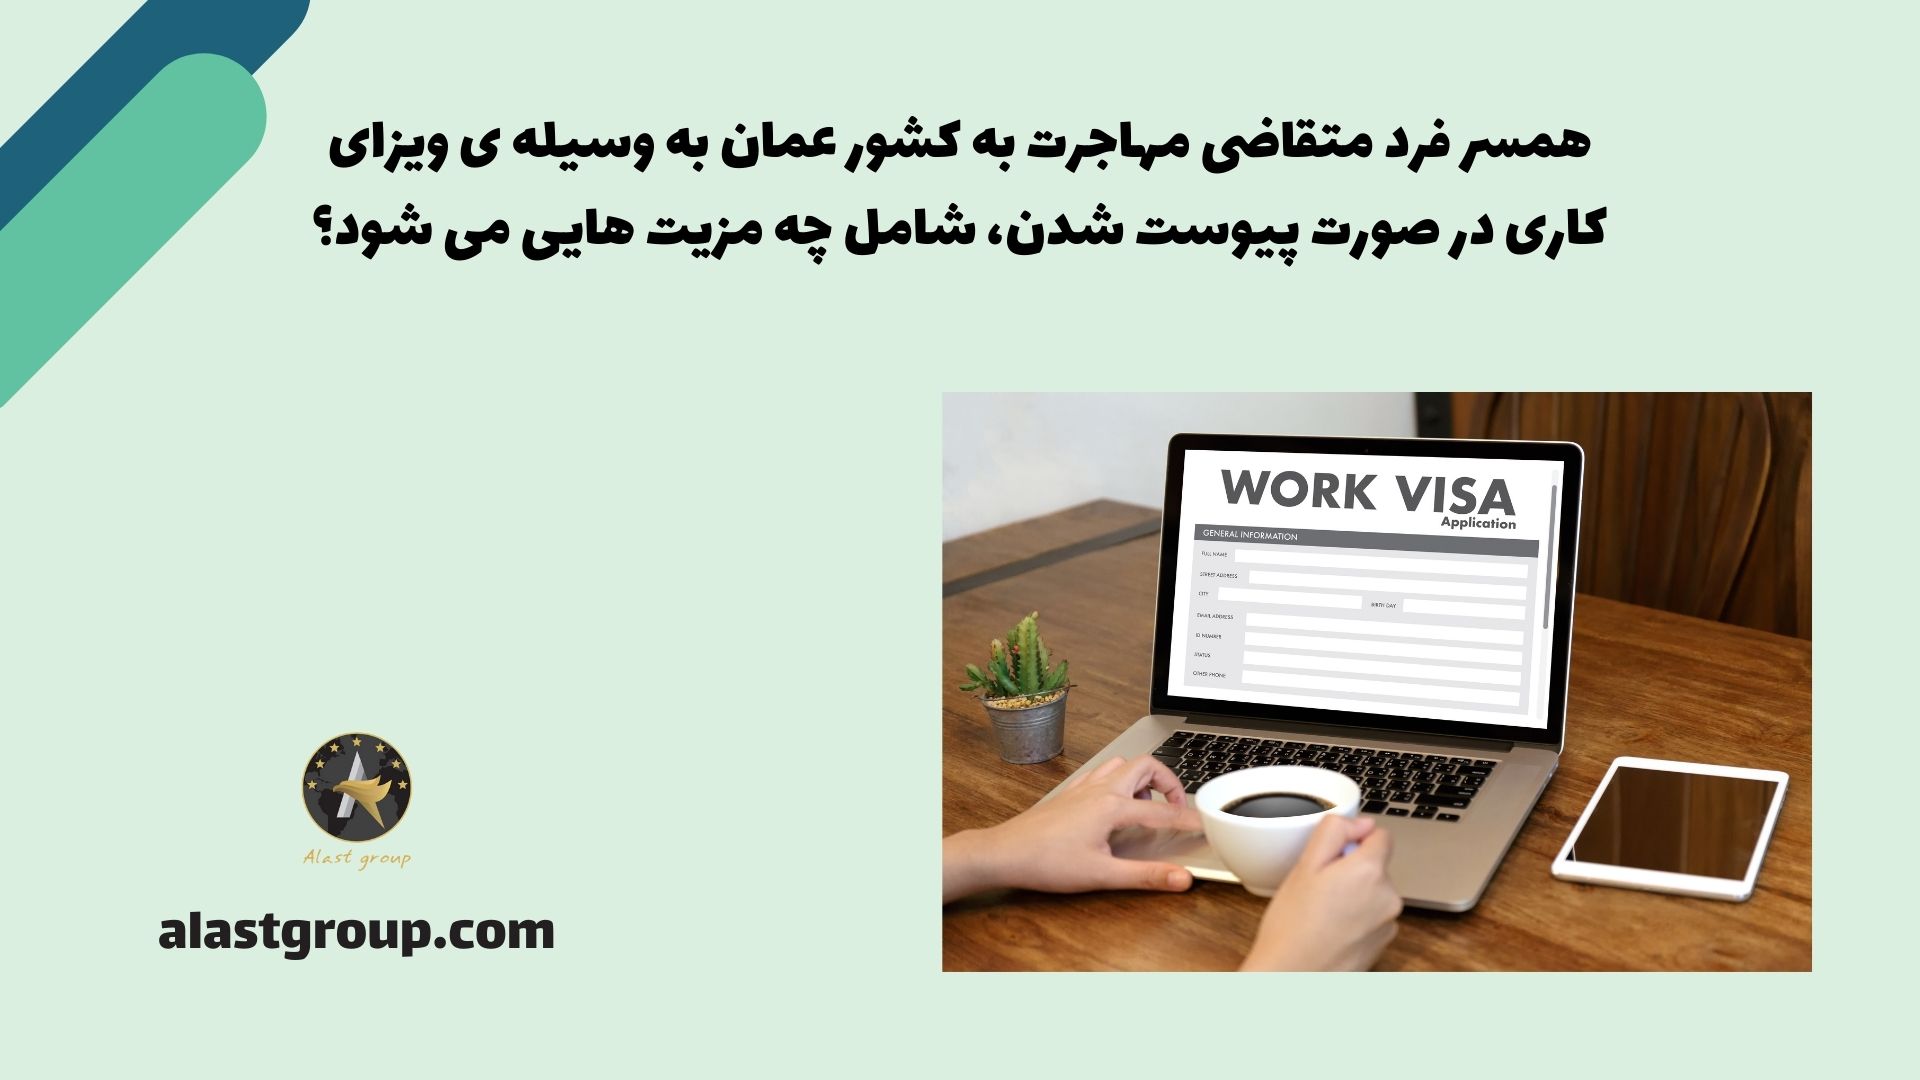 همسر فرد متقاضی مهاجرت به کشور عمان به وسیله ی ویزای کاری در صورت پیوست شدن، شامل چه مزیت هایی می شود؟